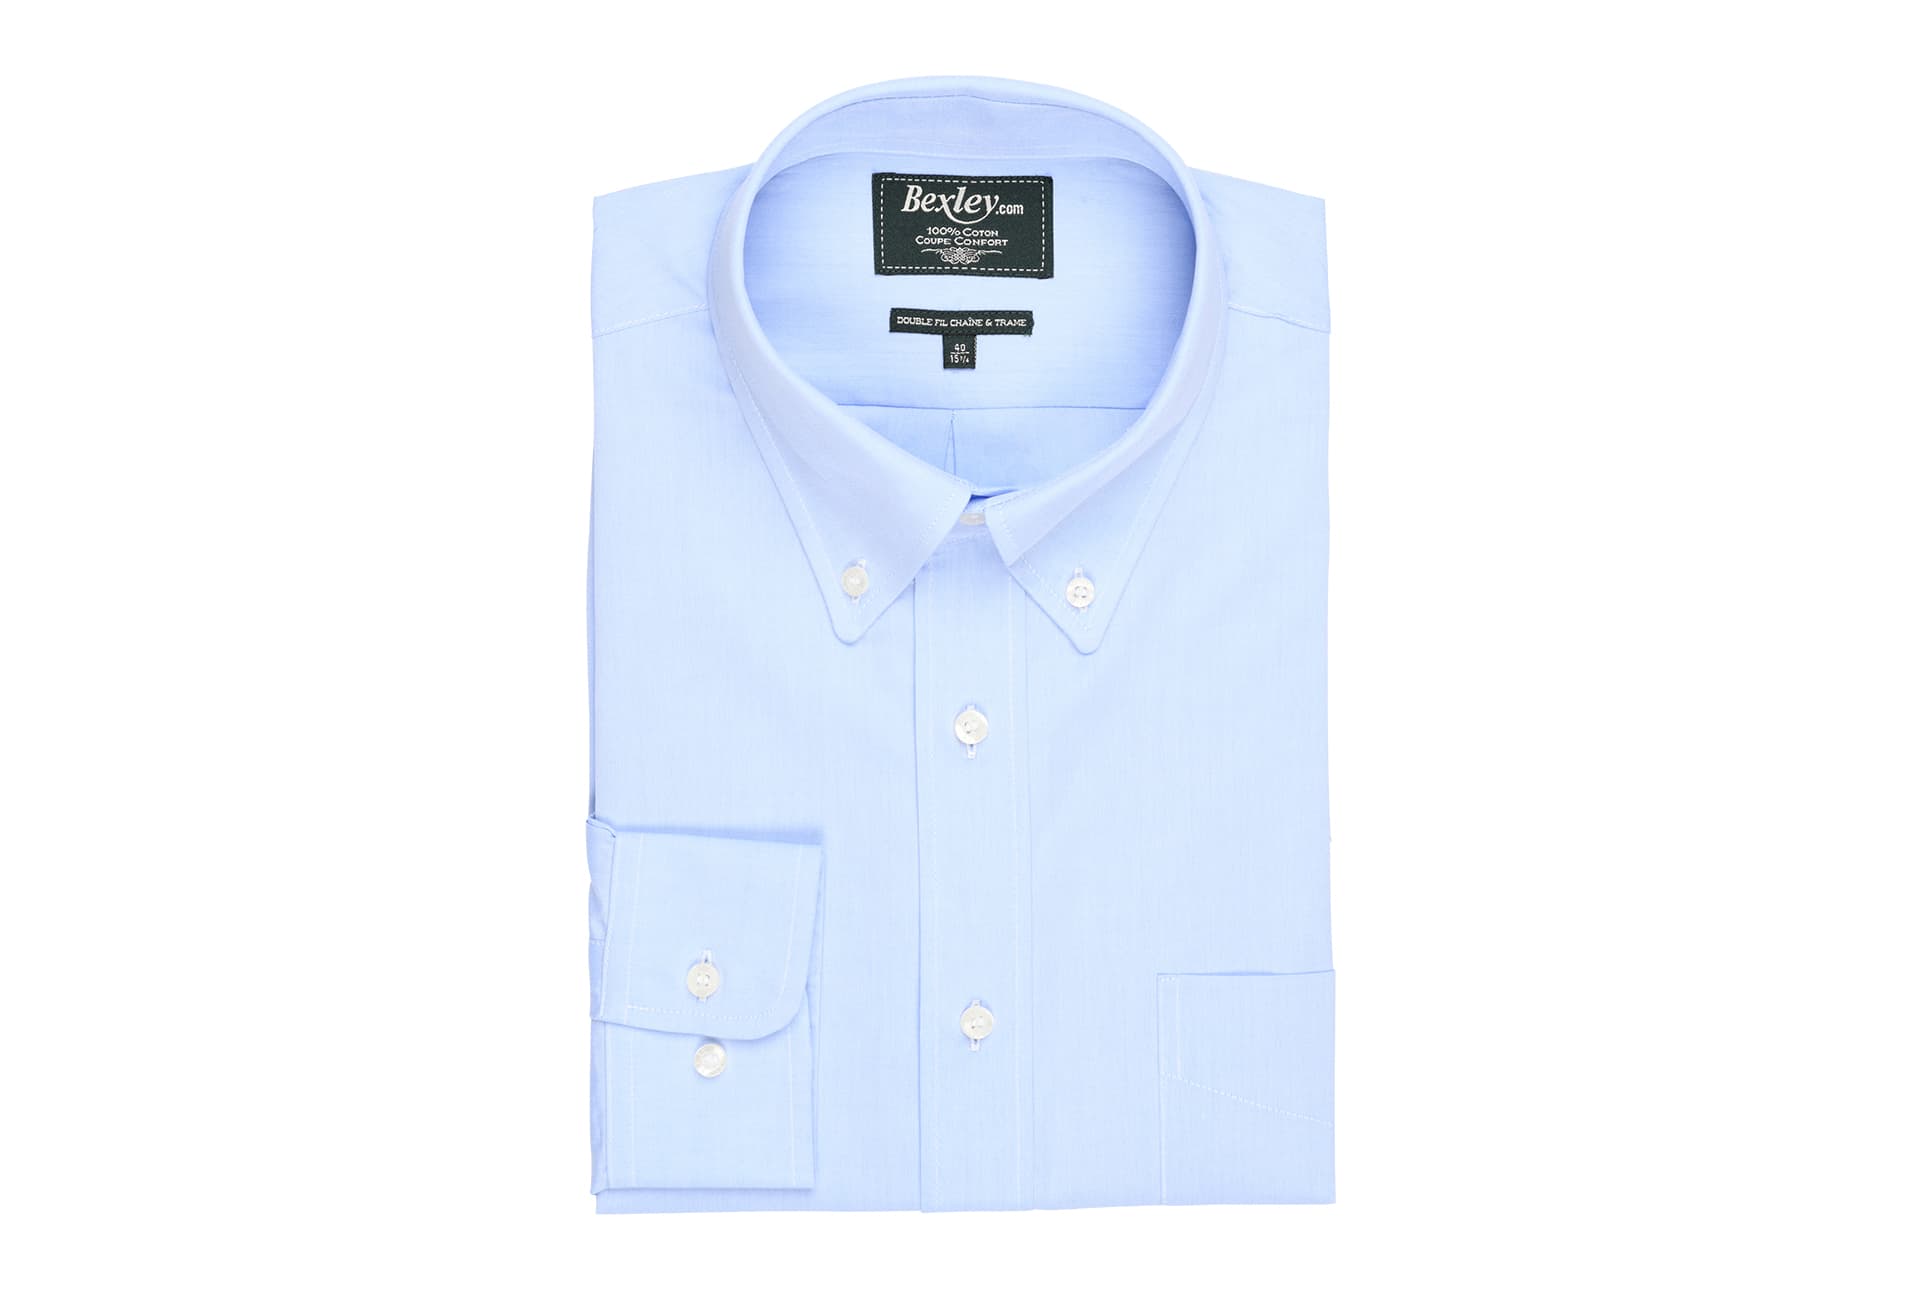 bexley chemise homme 100% coton, bleu clair, manches longues, coupe confort